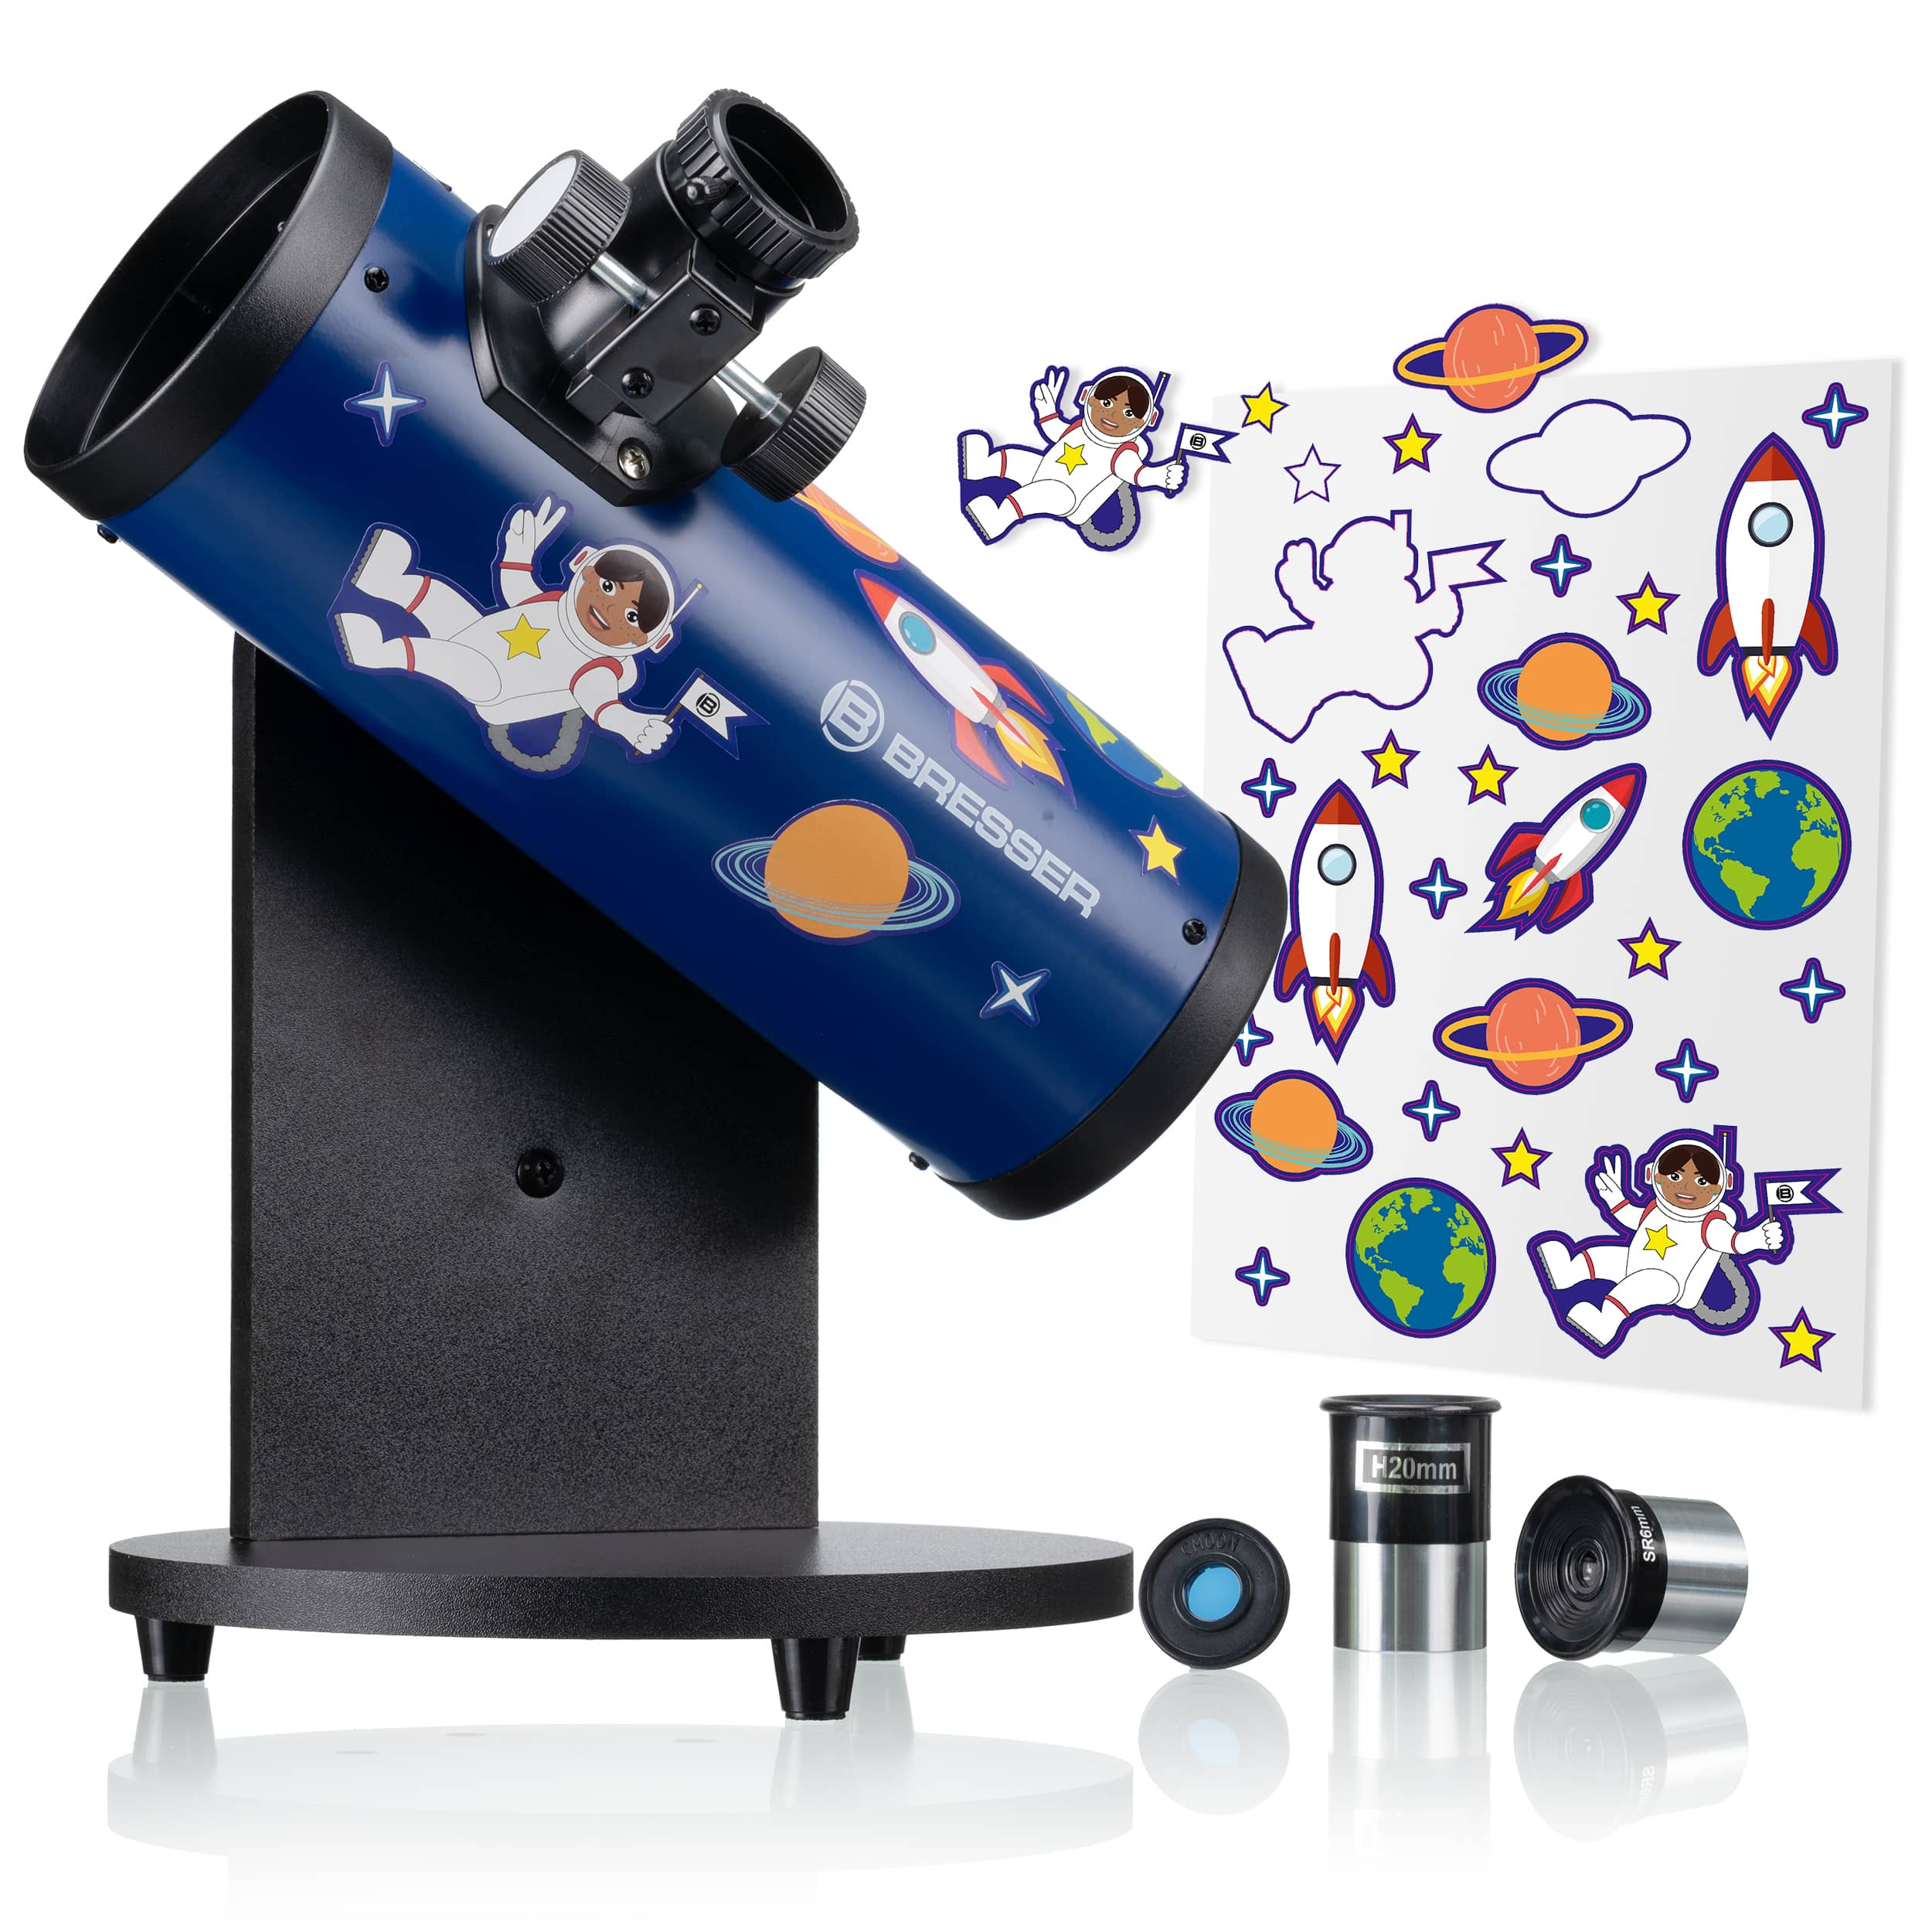   Ci si può avventurare con entusiasmo nell'astronomia con questo telescopio per bambini facile da usare, che include 2 oculari e un filtro lunare  